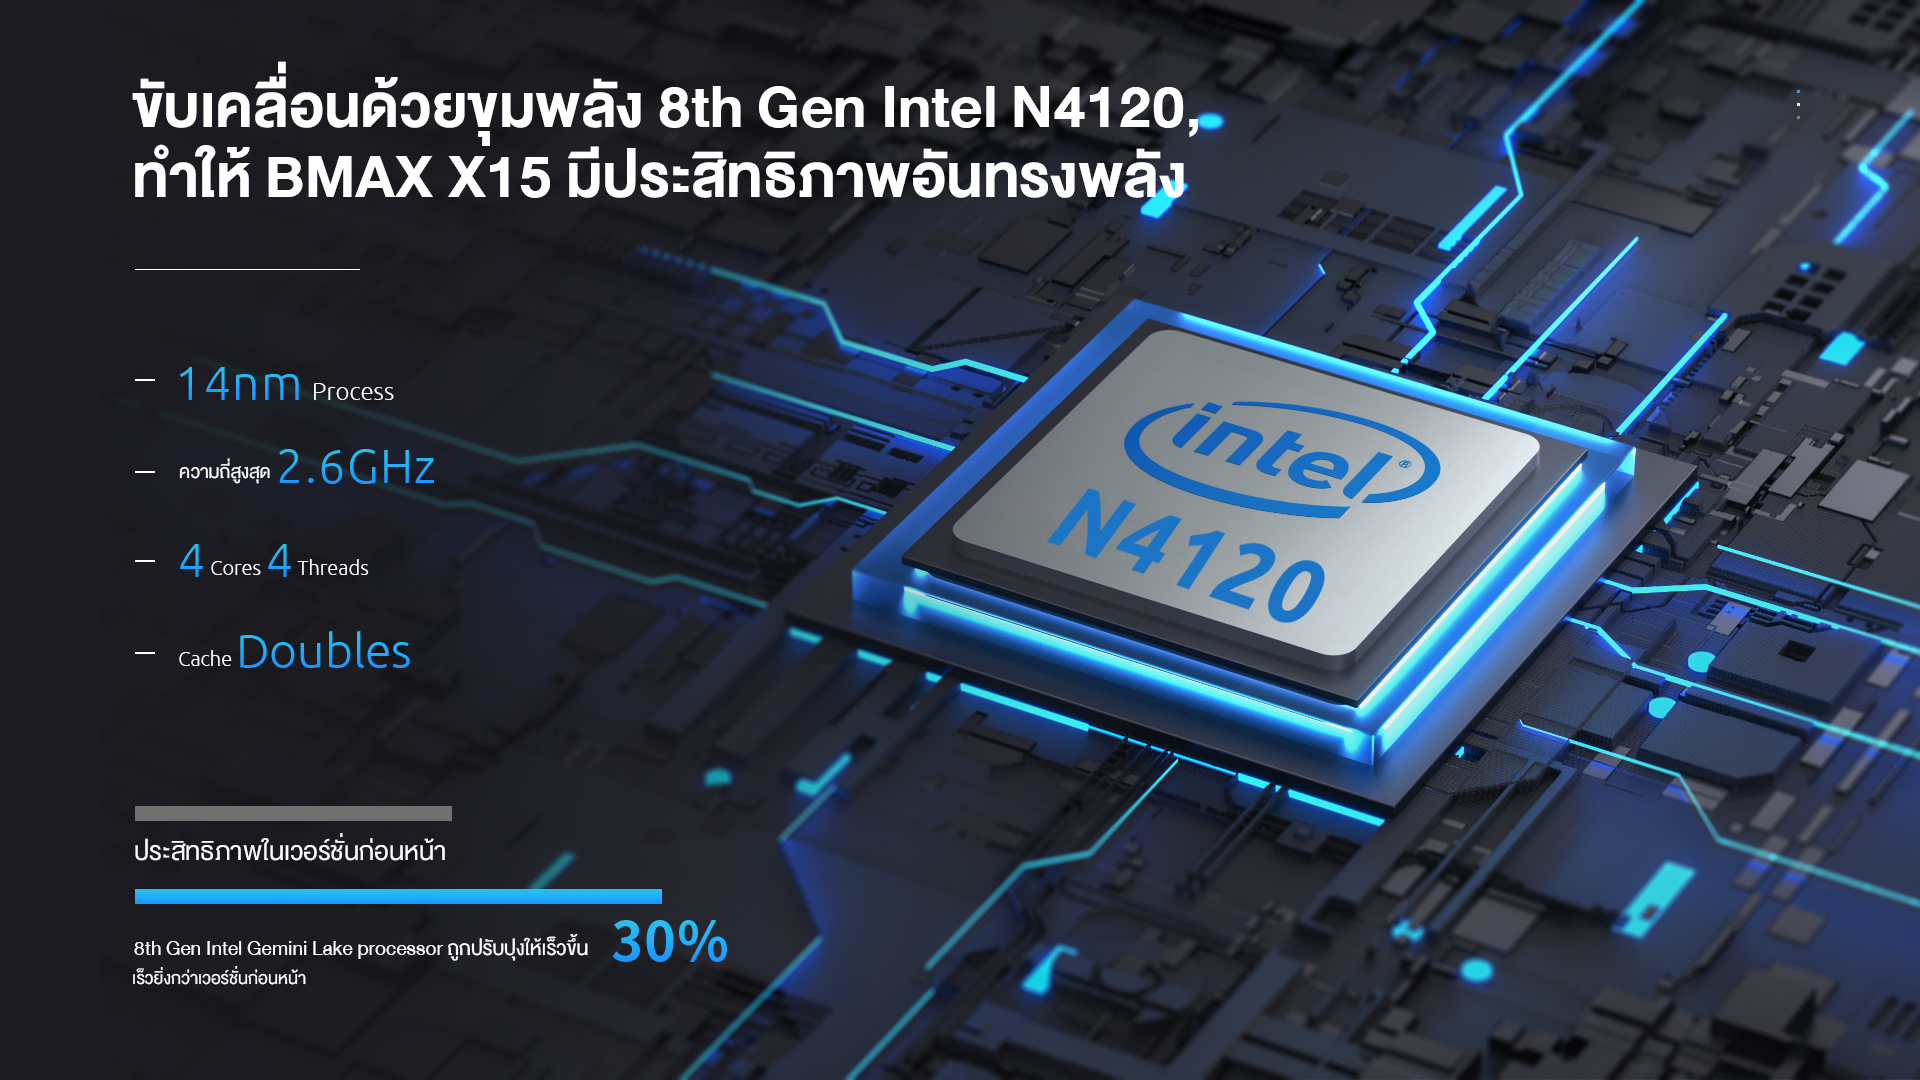 เกี่ยวกับสินค้า BMAX X15 โน้ตบุ๊ค หน้าจอ 15.6 นิ้ว Intel® Gemini Lake N4120 RAM 8GB DDR4 256/512GB SSD รองรับภาษาไทย จอใหญ่ภาพสวย พิมพ์งานเอกสาร ออกบิลใบกำกับภาษีได้ จัดส่งเร็ว